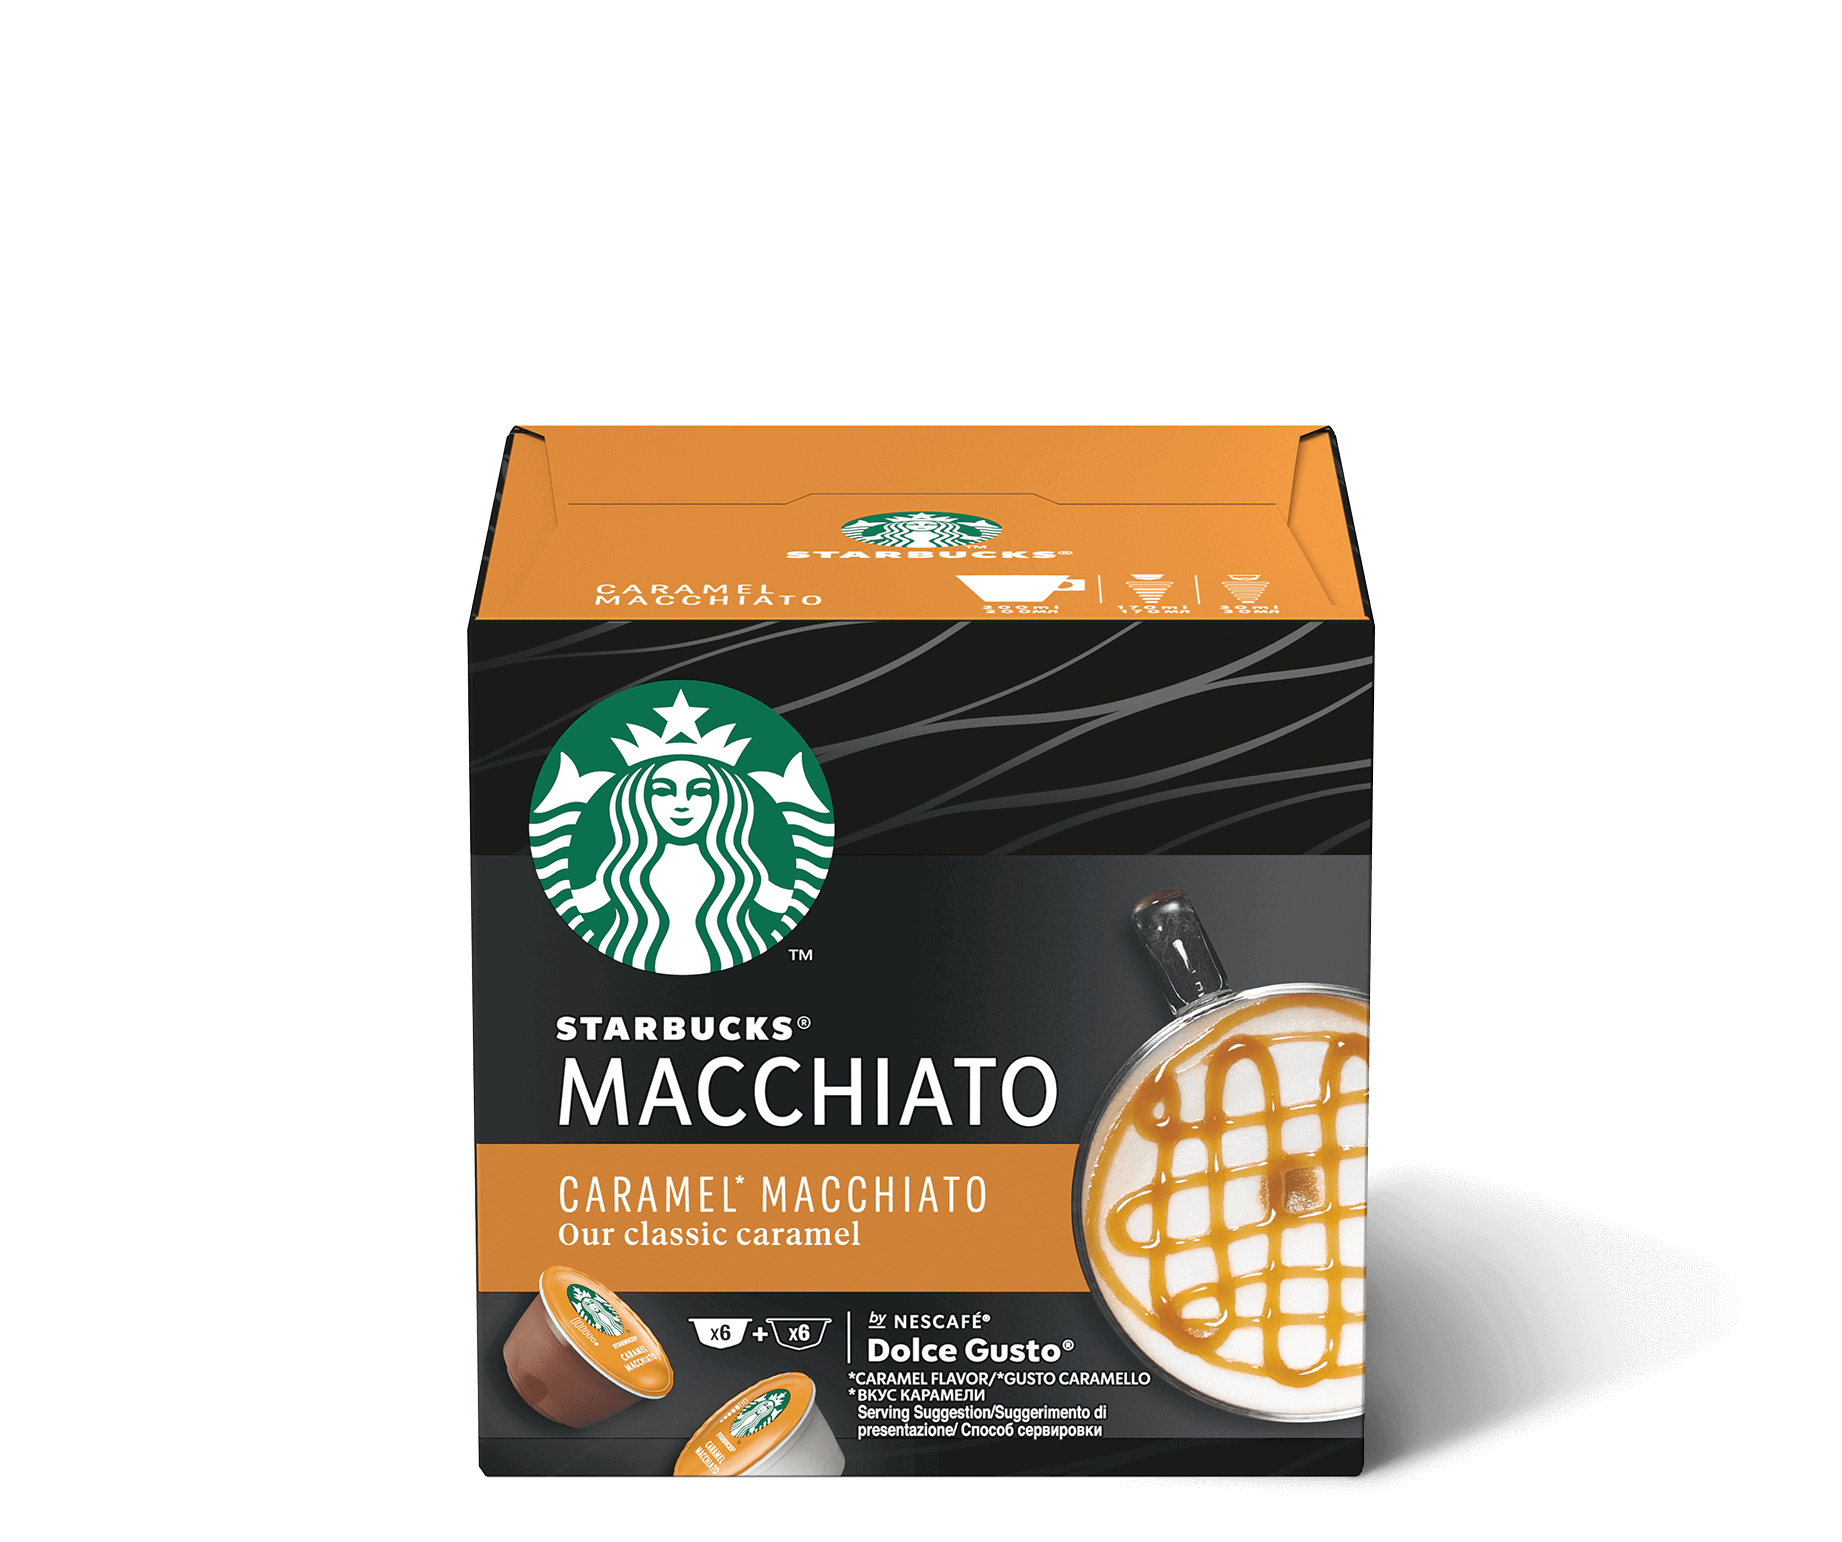 Confezione Capsule Starbucks Caramel Macchiato by Nescafé DolceGusto